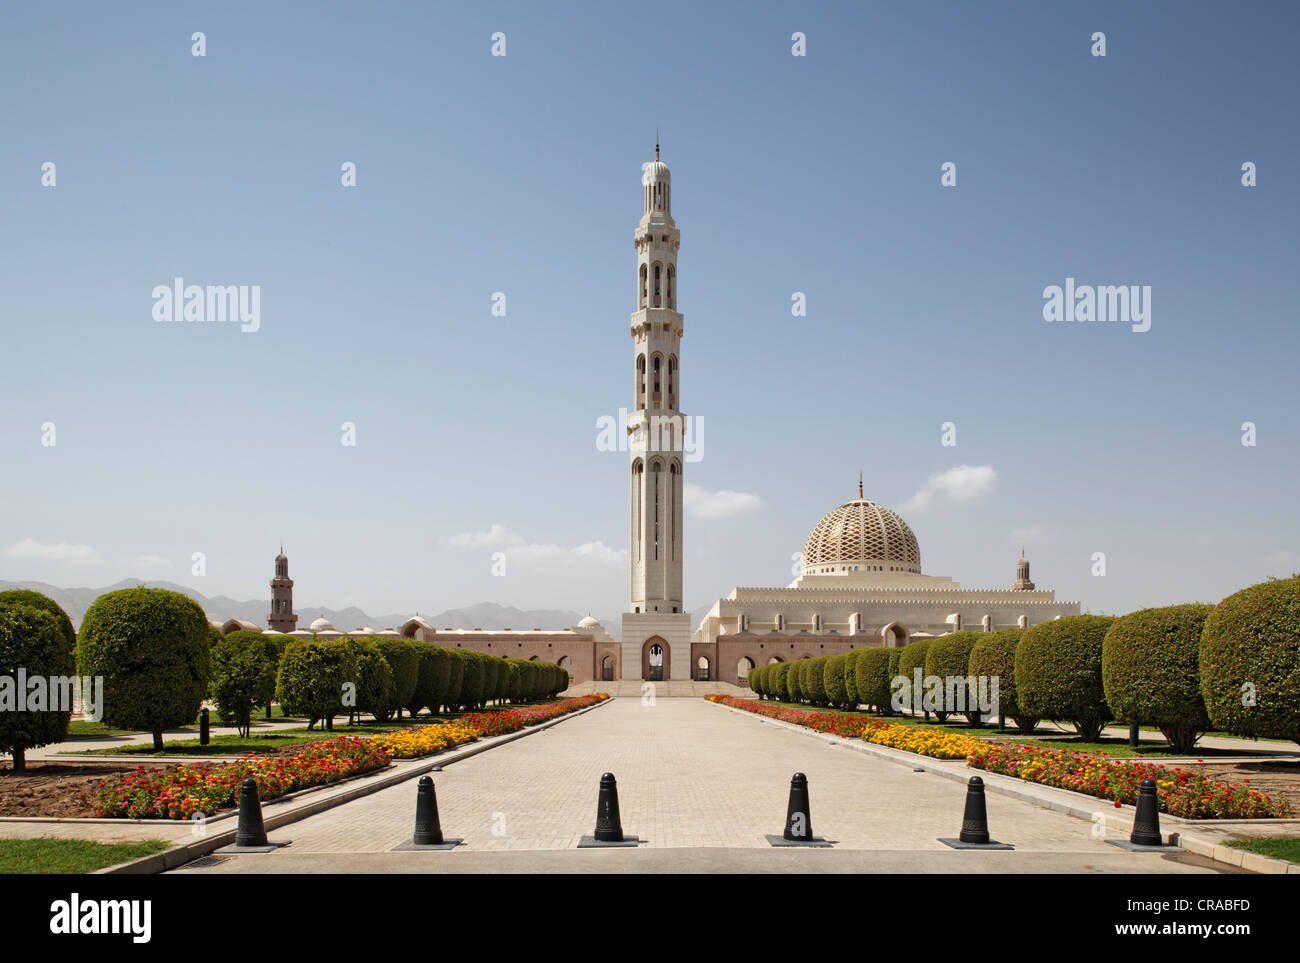 Panoramica, minareto, letto di fiori e alberi, Sultan Qaboos Grande Moschea, Moscato di capitale, il sultanato di Oman, gli stati del golfo Foto Stock